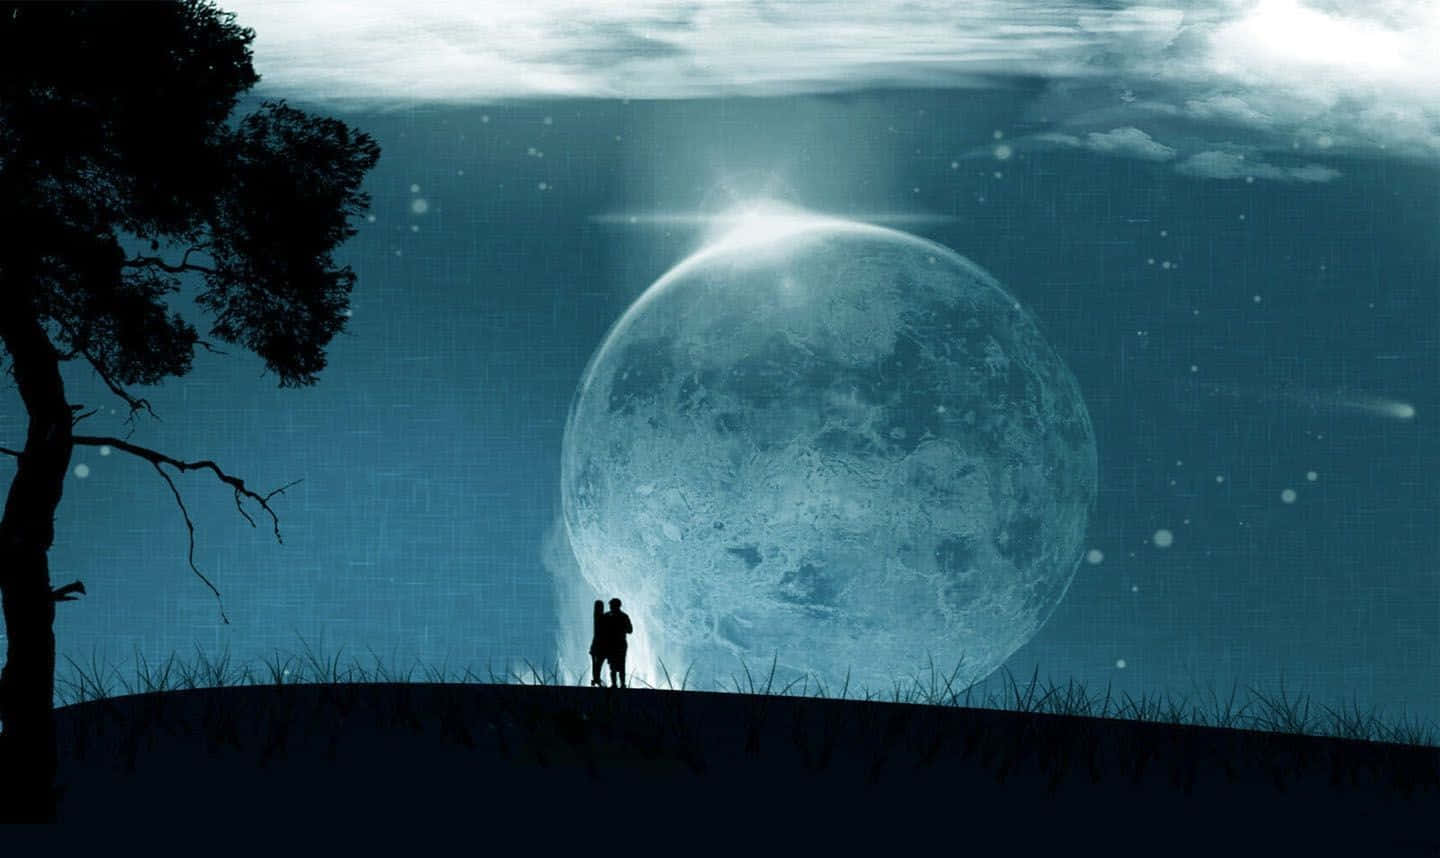 Einpaar Steht Auf Einem Hügel Mit Dem Mond Im Hintergrund.